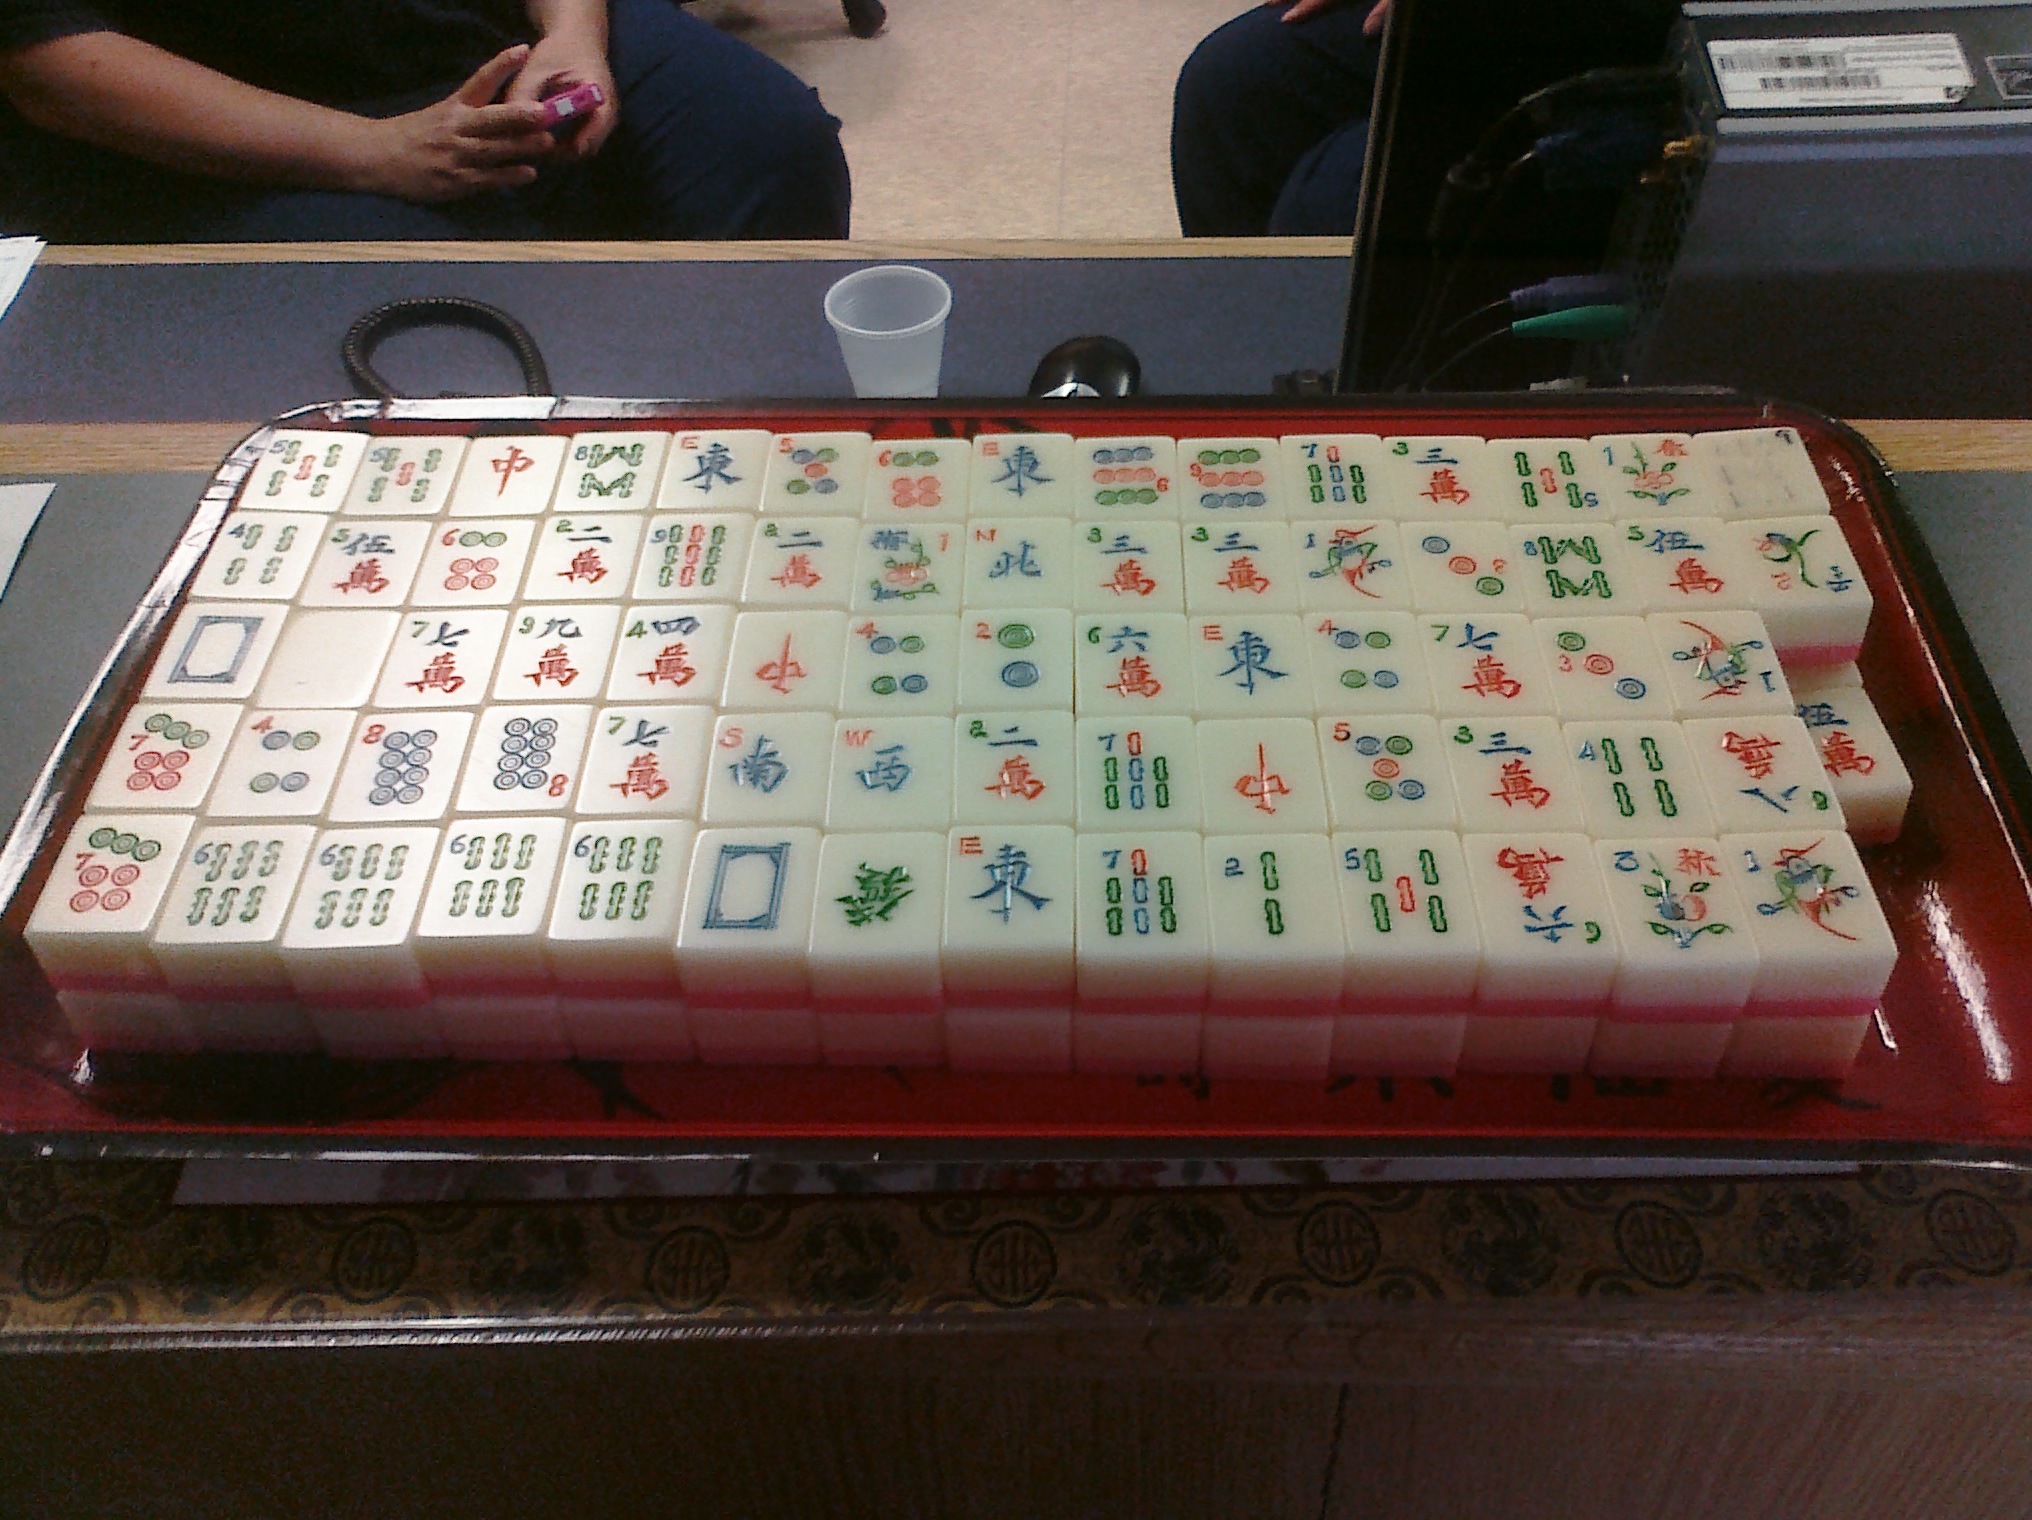 Sweet Mahjong.